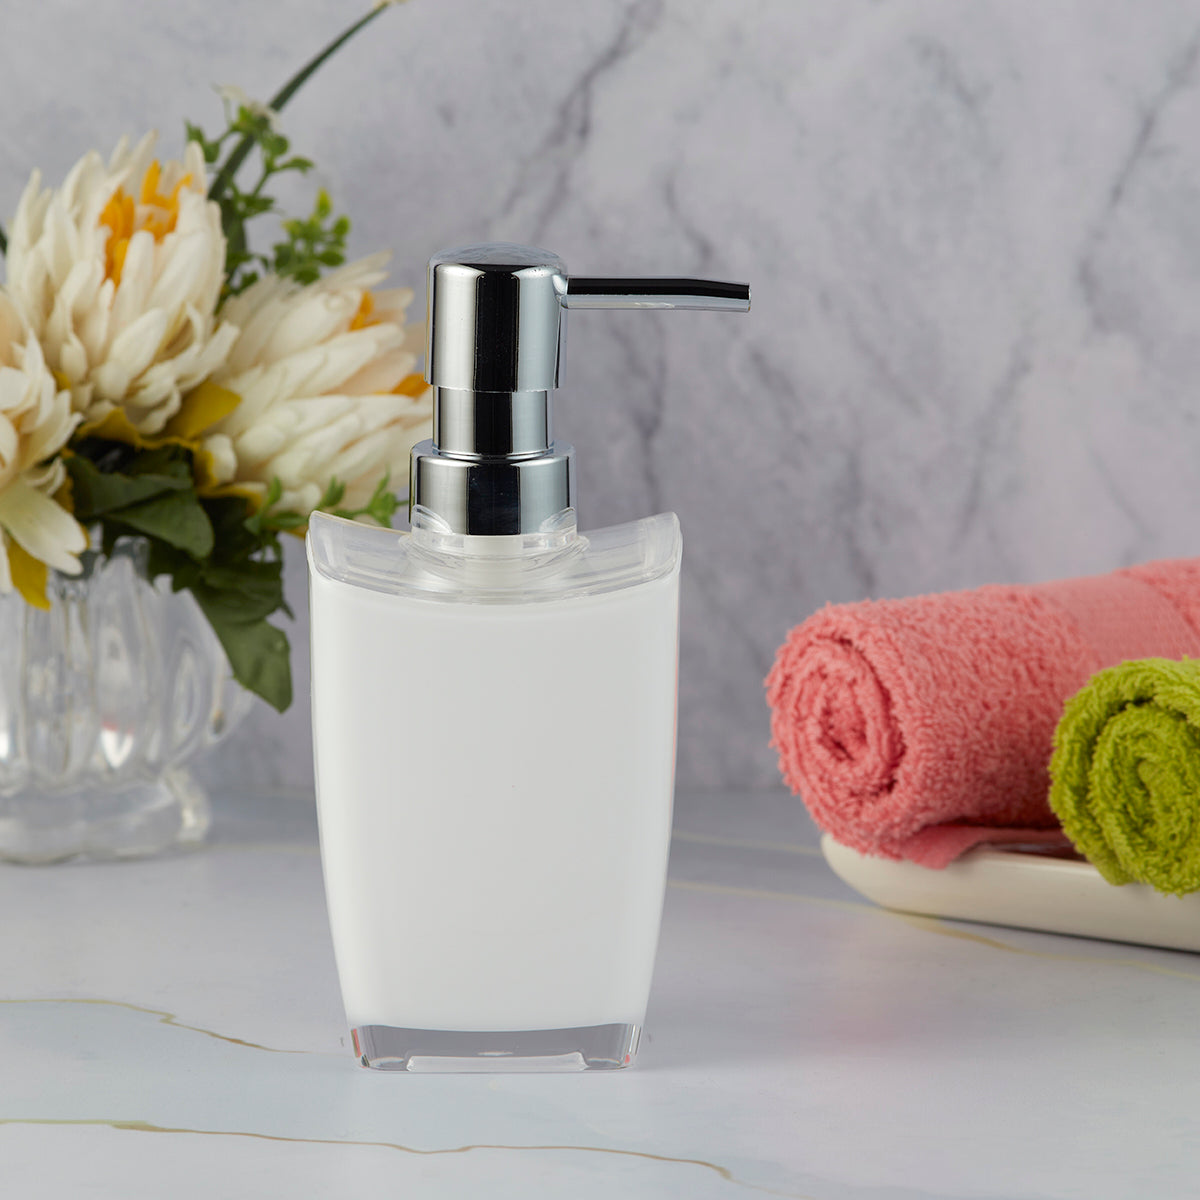 Acrylic Soap Dispenser Pump for Bathroom for Bath Gel, Lotion, Shampoo (10051)